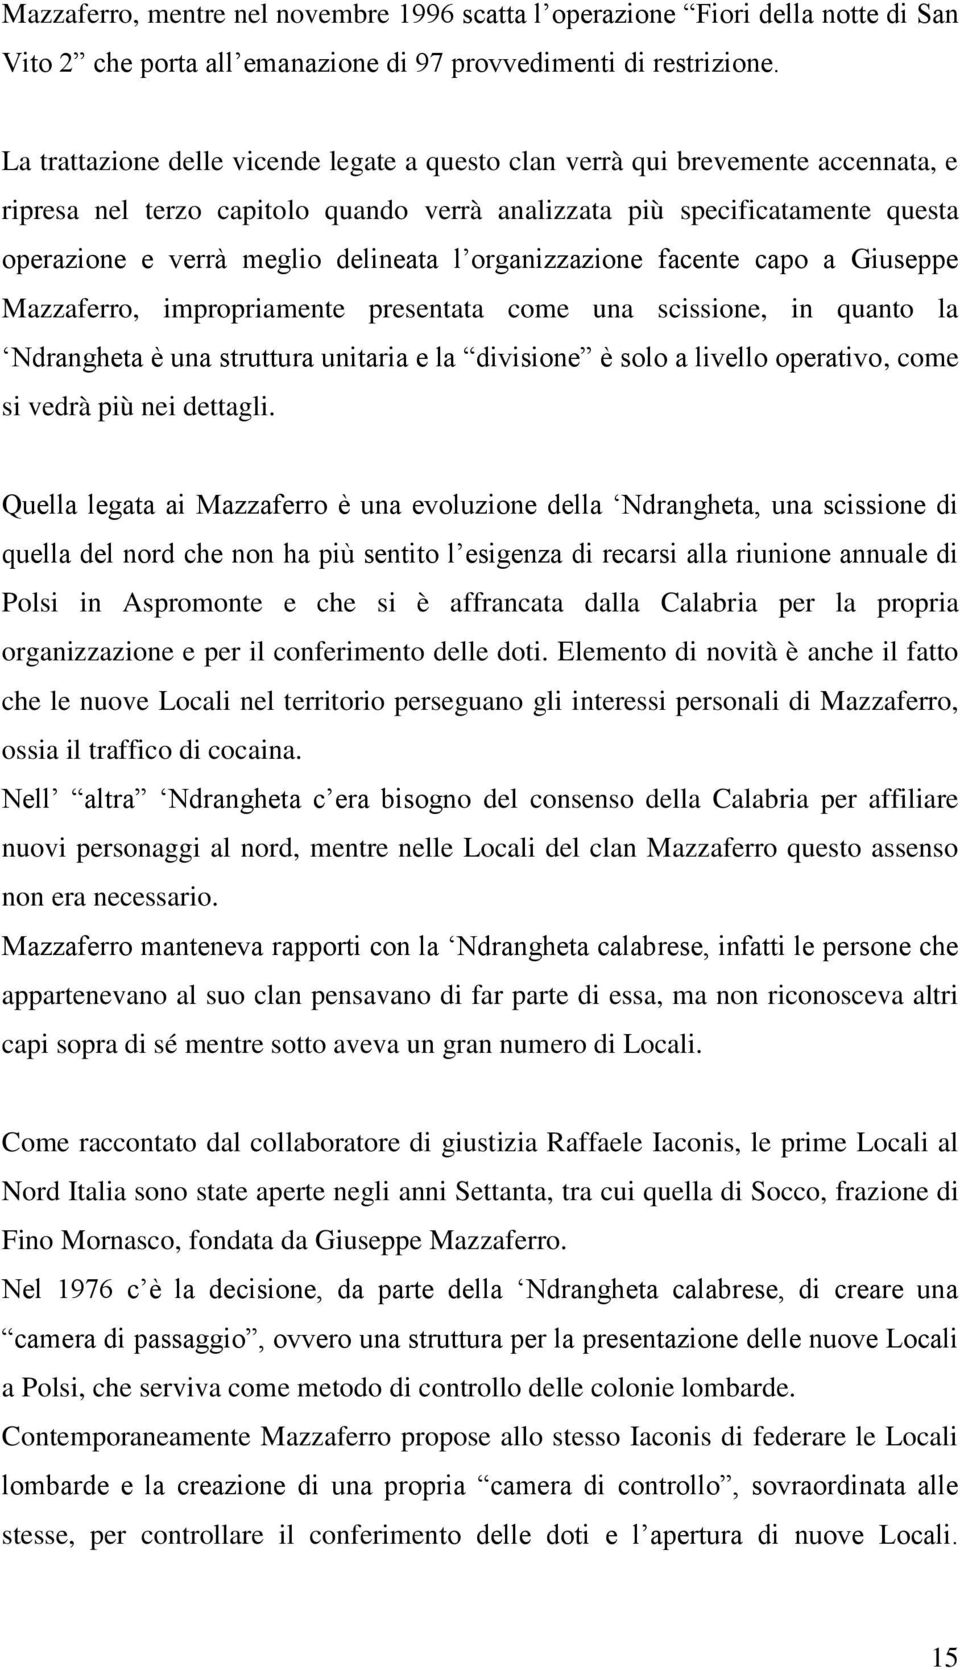 l organizzazione facente capo a Giuseppe Mazzaferro, impropriamente presentata come una scissione, in quanto la Ndrangheta è una struttura unitaria e la divisione è solo a livello operativo, come si